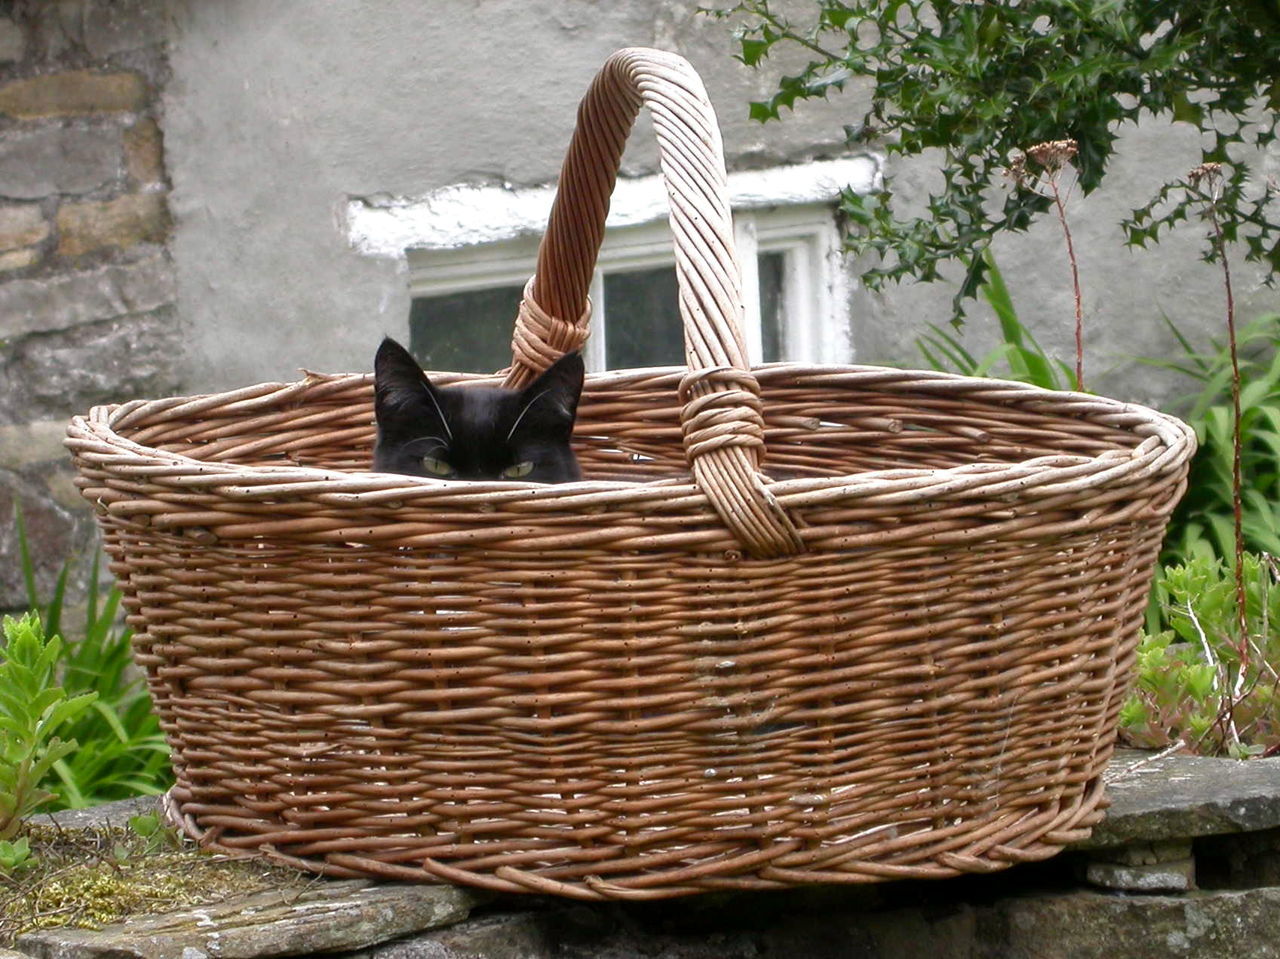 Portrait of cat in wicker basket on retaining wall